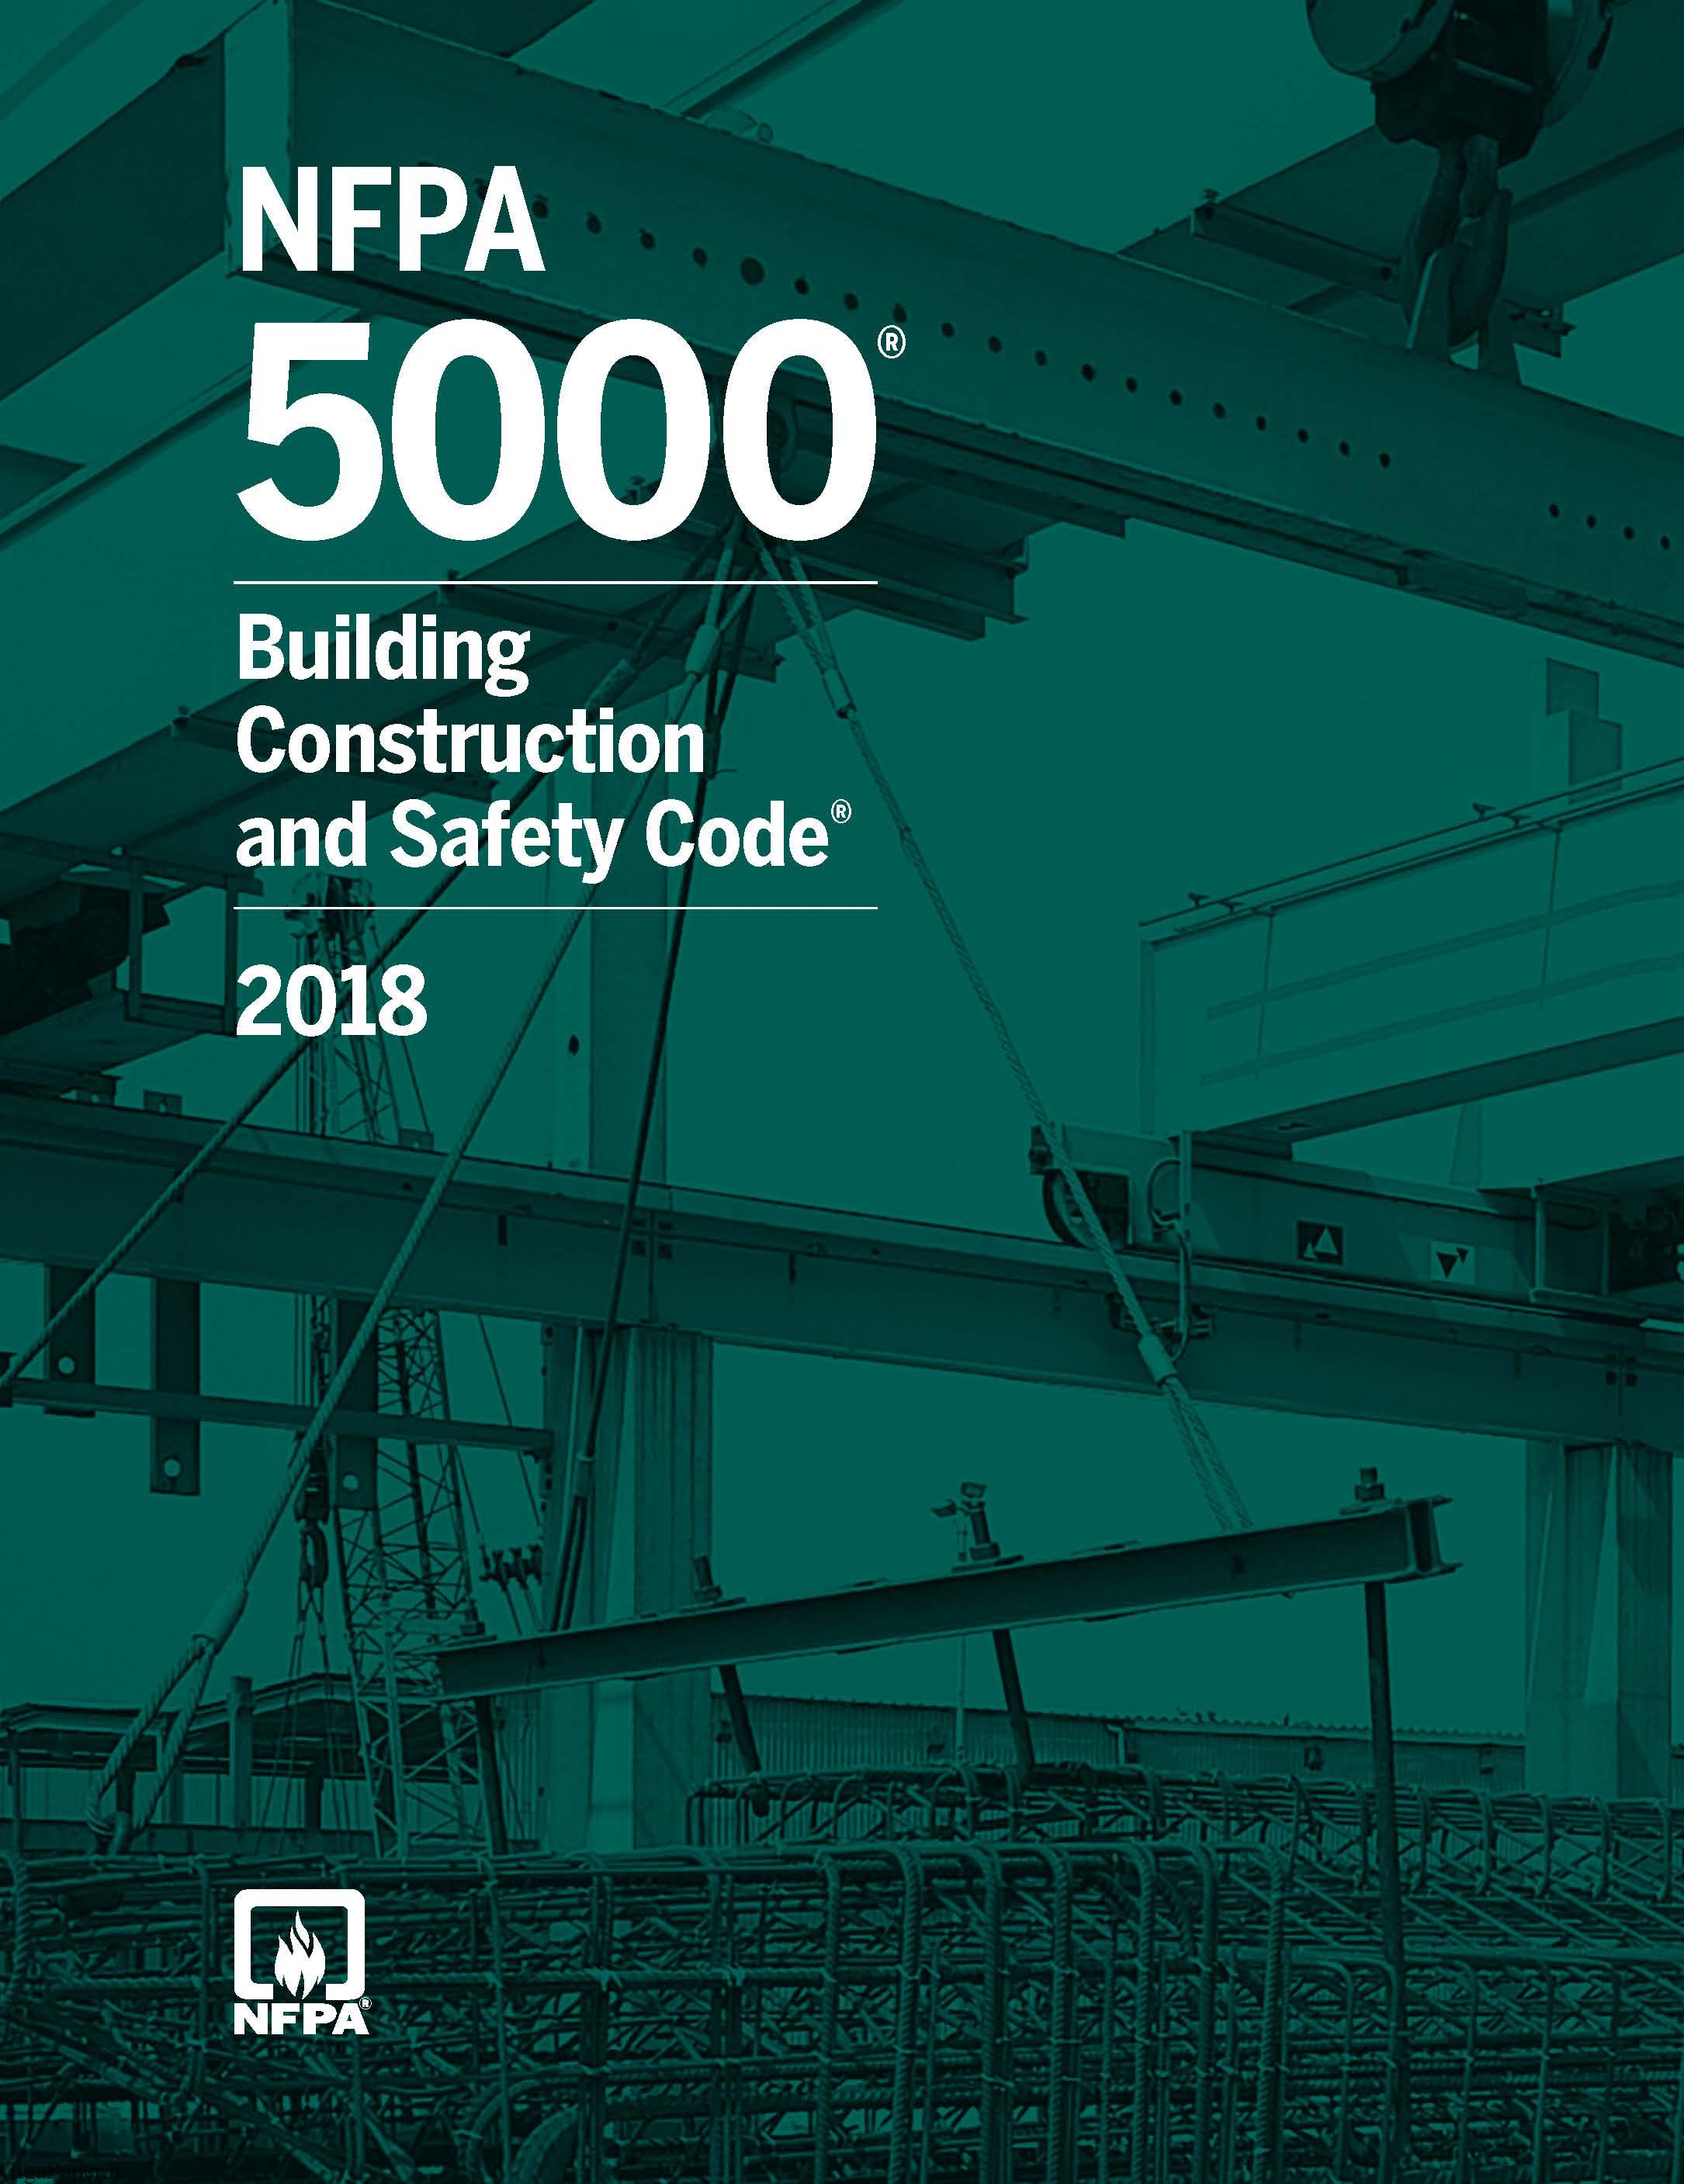 خرید استاندارد NFPA 5000 دستورالعمل ایمنی سازه ساختمان ها، سال 2018 Building Construction and Safety Code, 2018 Edition استاندارد حفاظت از حریق سازمان NFPA گیگاپیپر